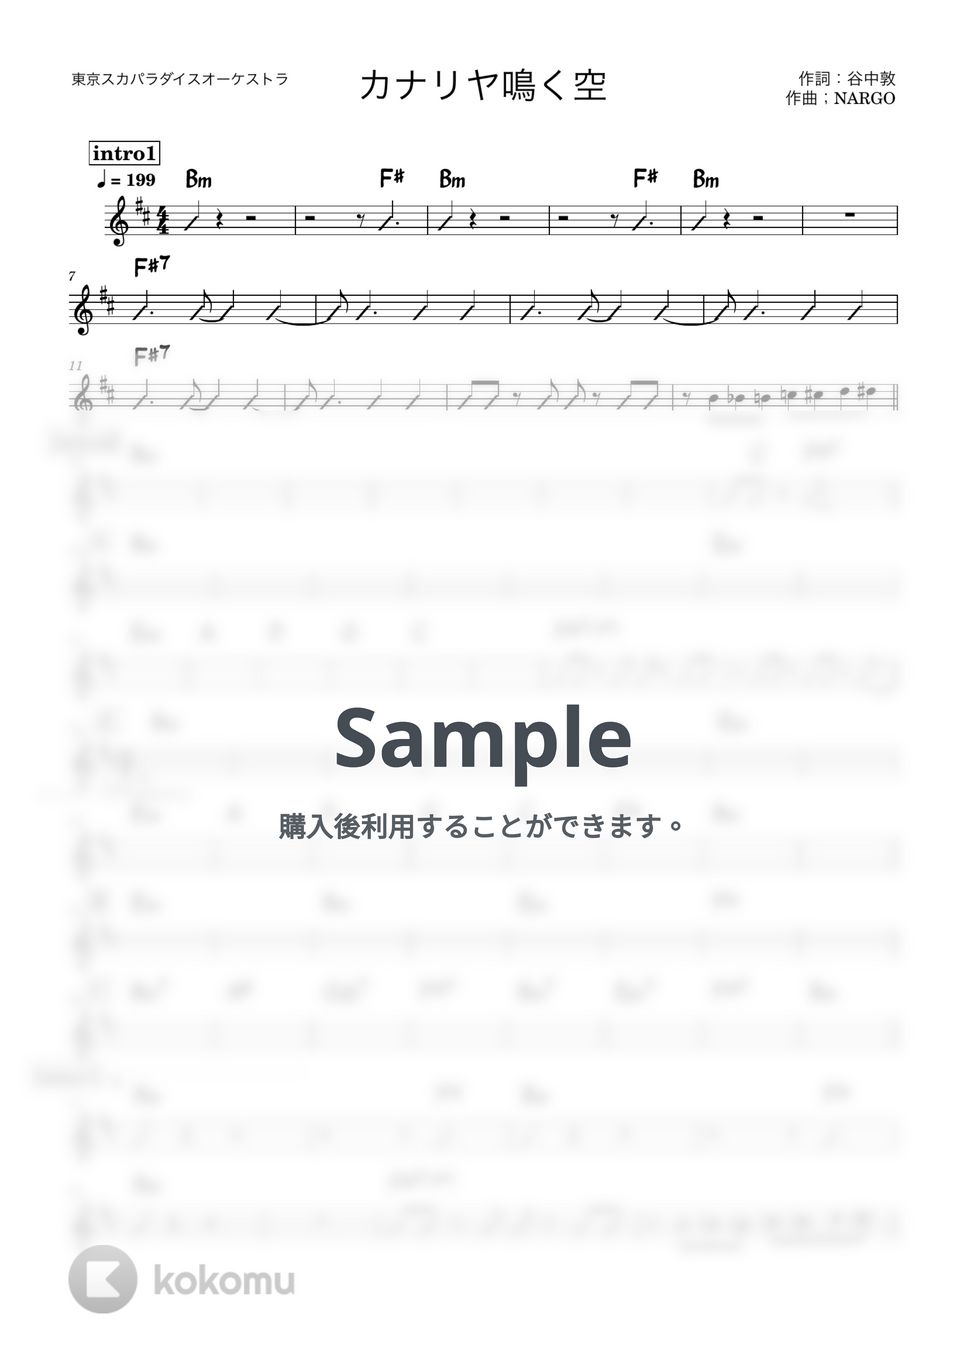 東京スカパラダイスオーケストラ - カナリヤ鳴く空 (バンド用コード譜) by 箱譜屋